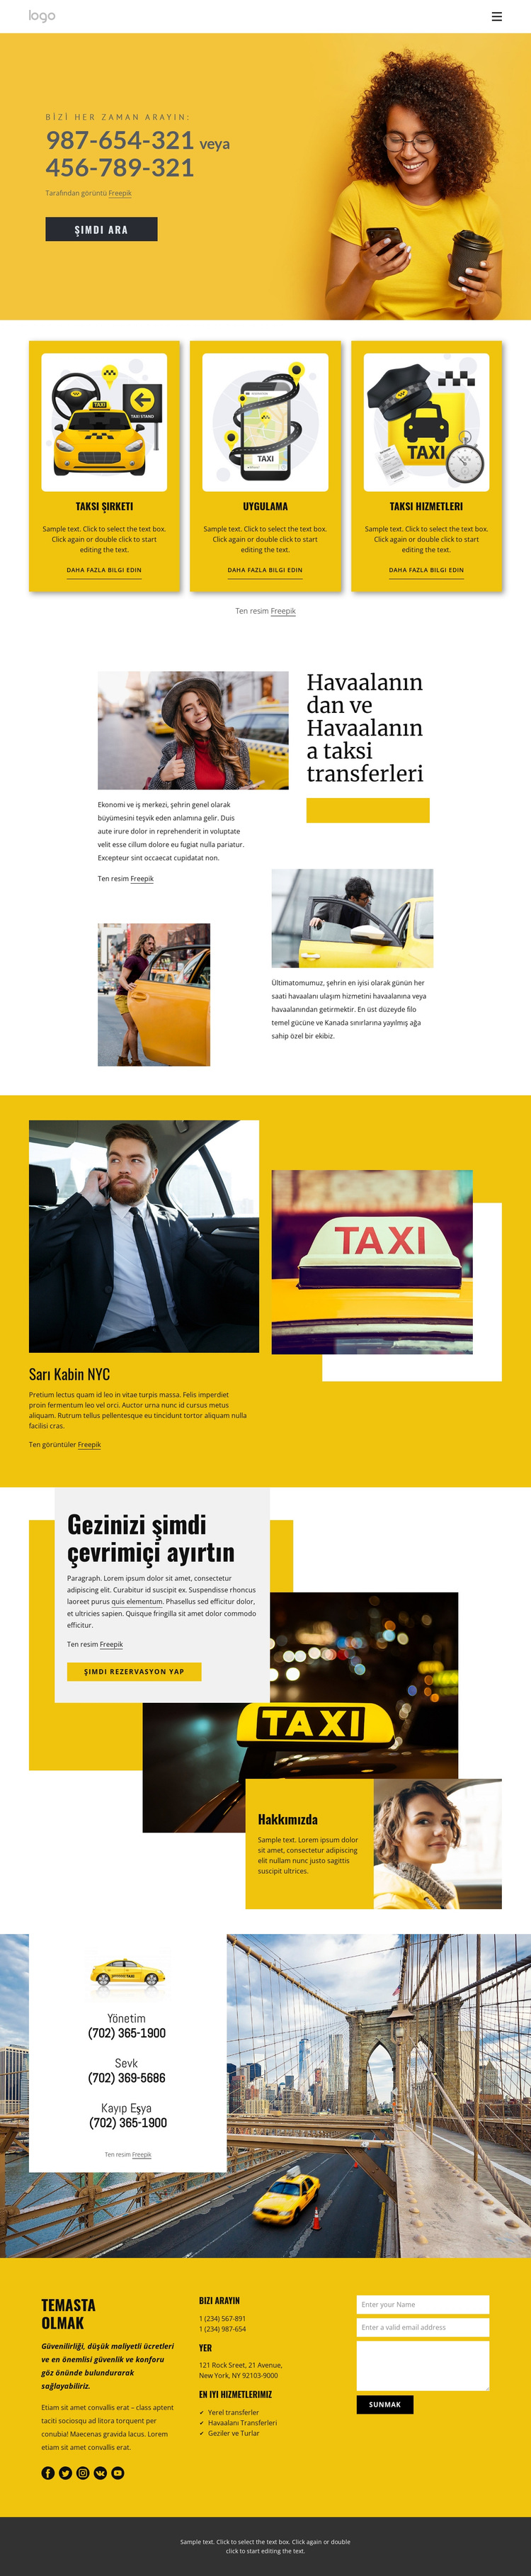 Kaliteli taksi hizmeti WordPress Teması